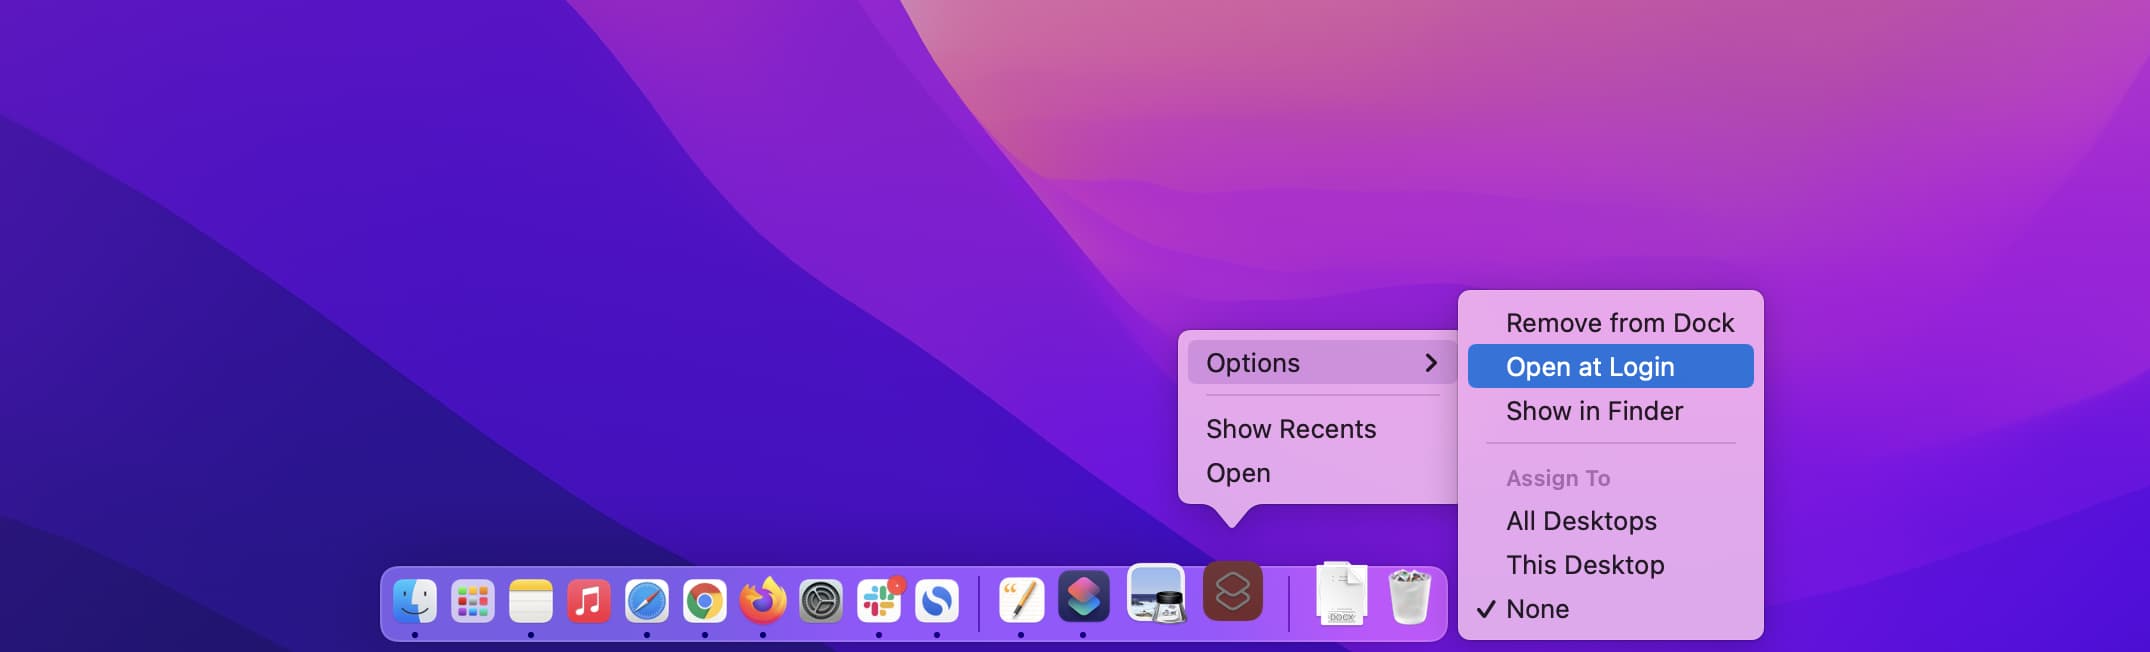 Ouvrir automatiquement le raccourci lors de la connexion sur Mac